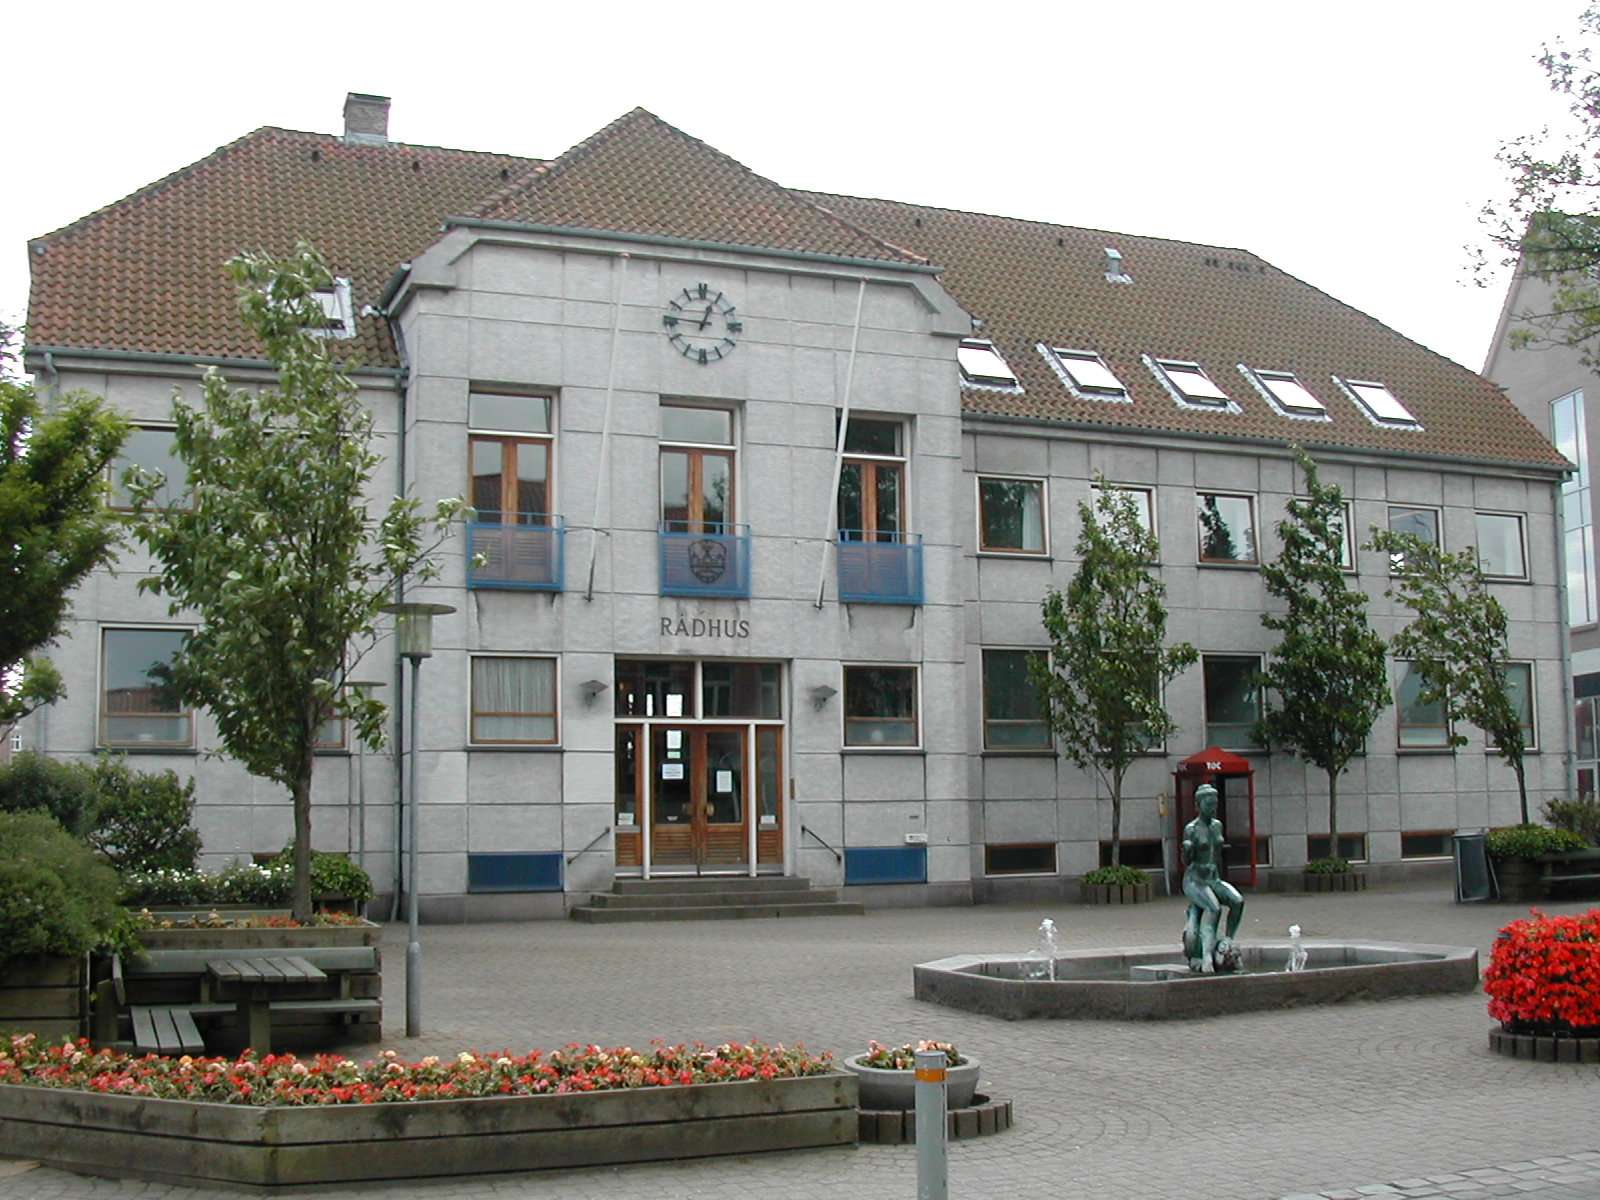 Det tidligere rådhus i Gråsten_2009